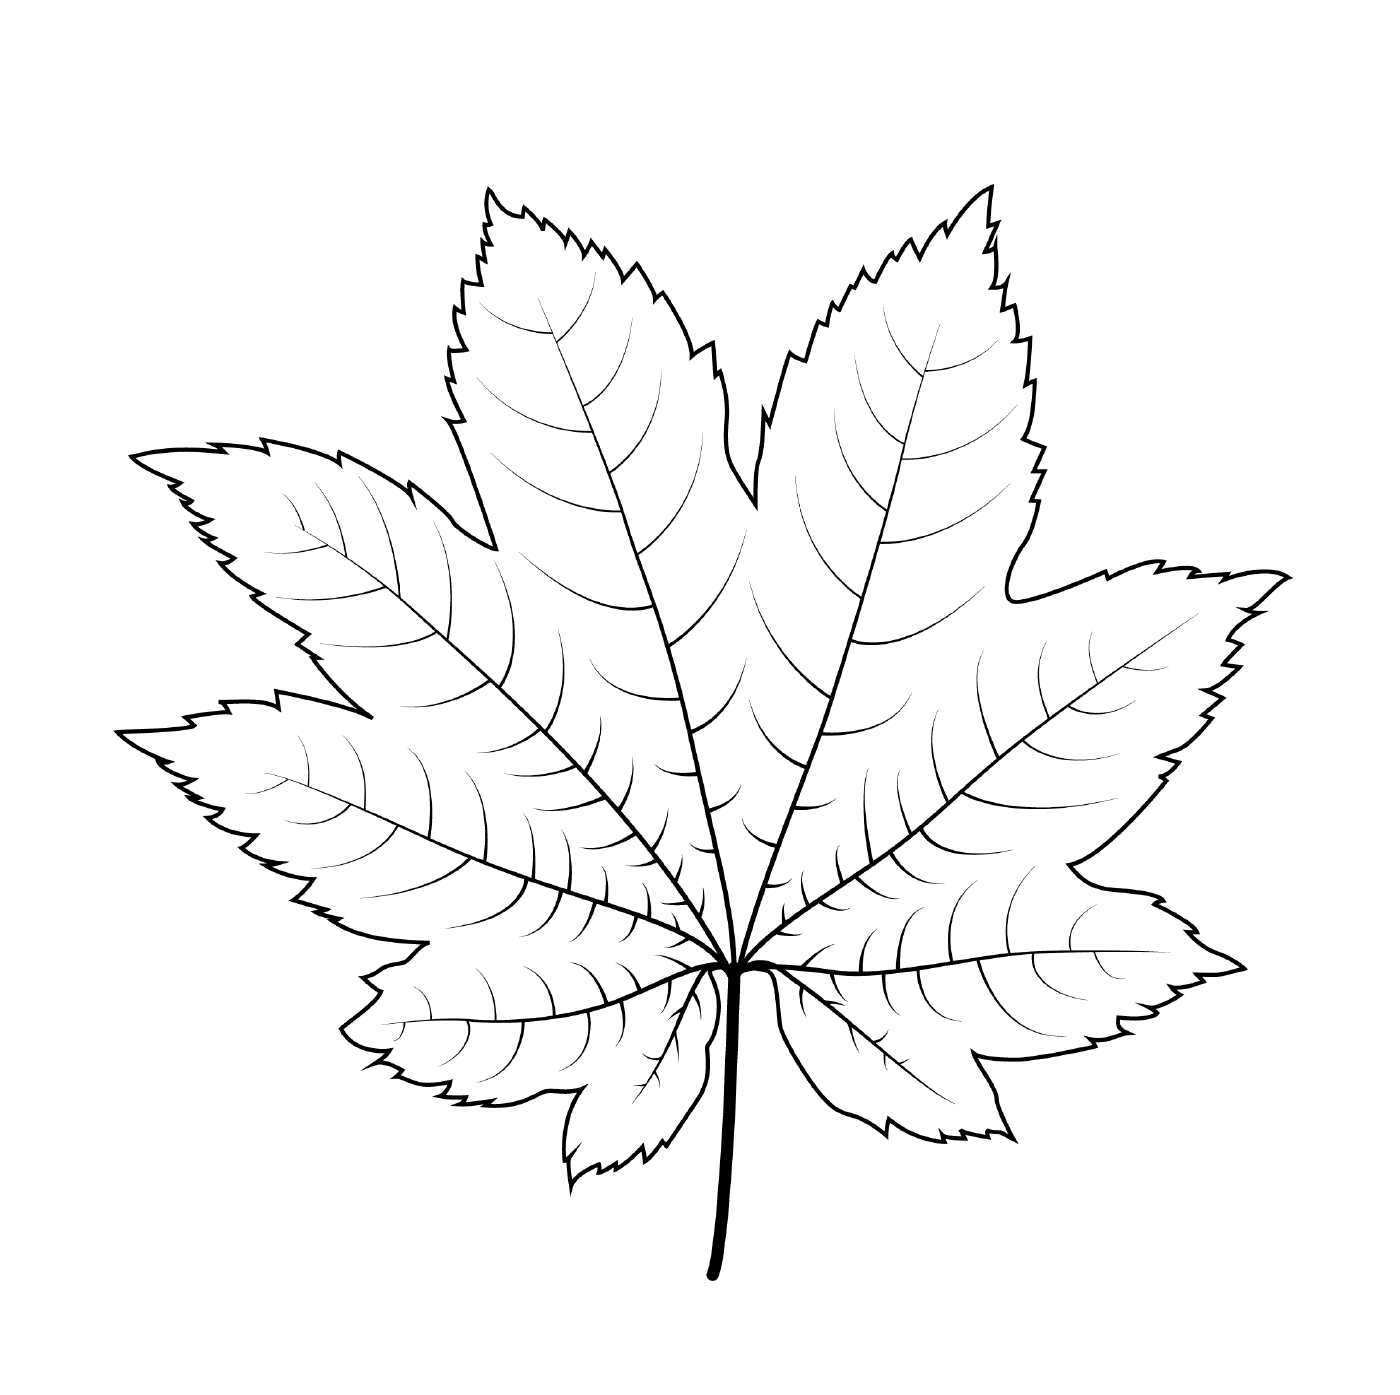  Vine maple leaf 